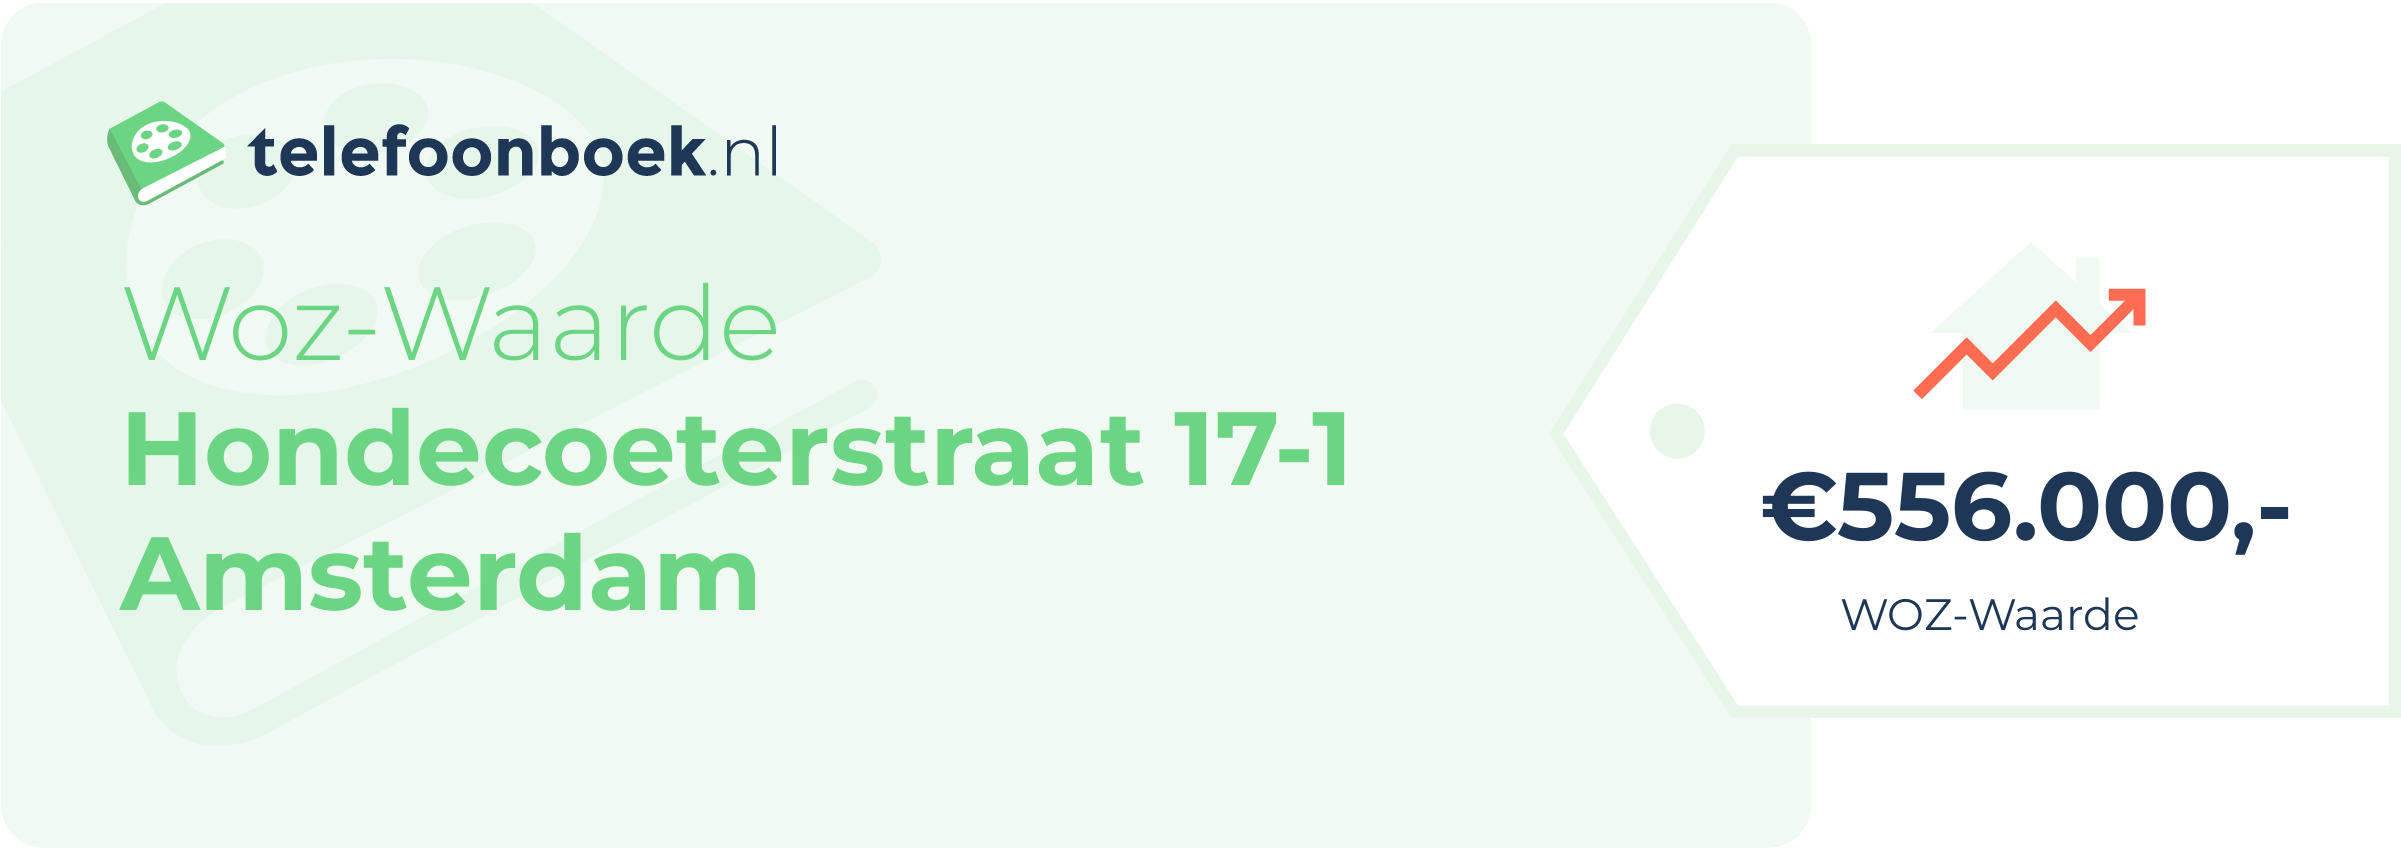 WOZ-waarde Hondecoeterstraat 17-1 Amsterdam